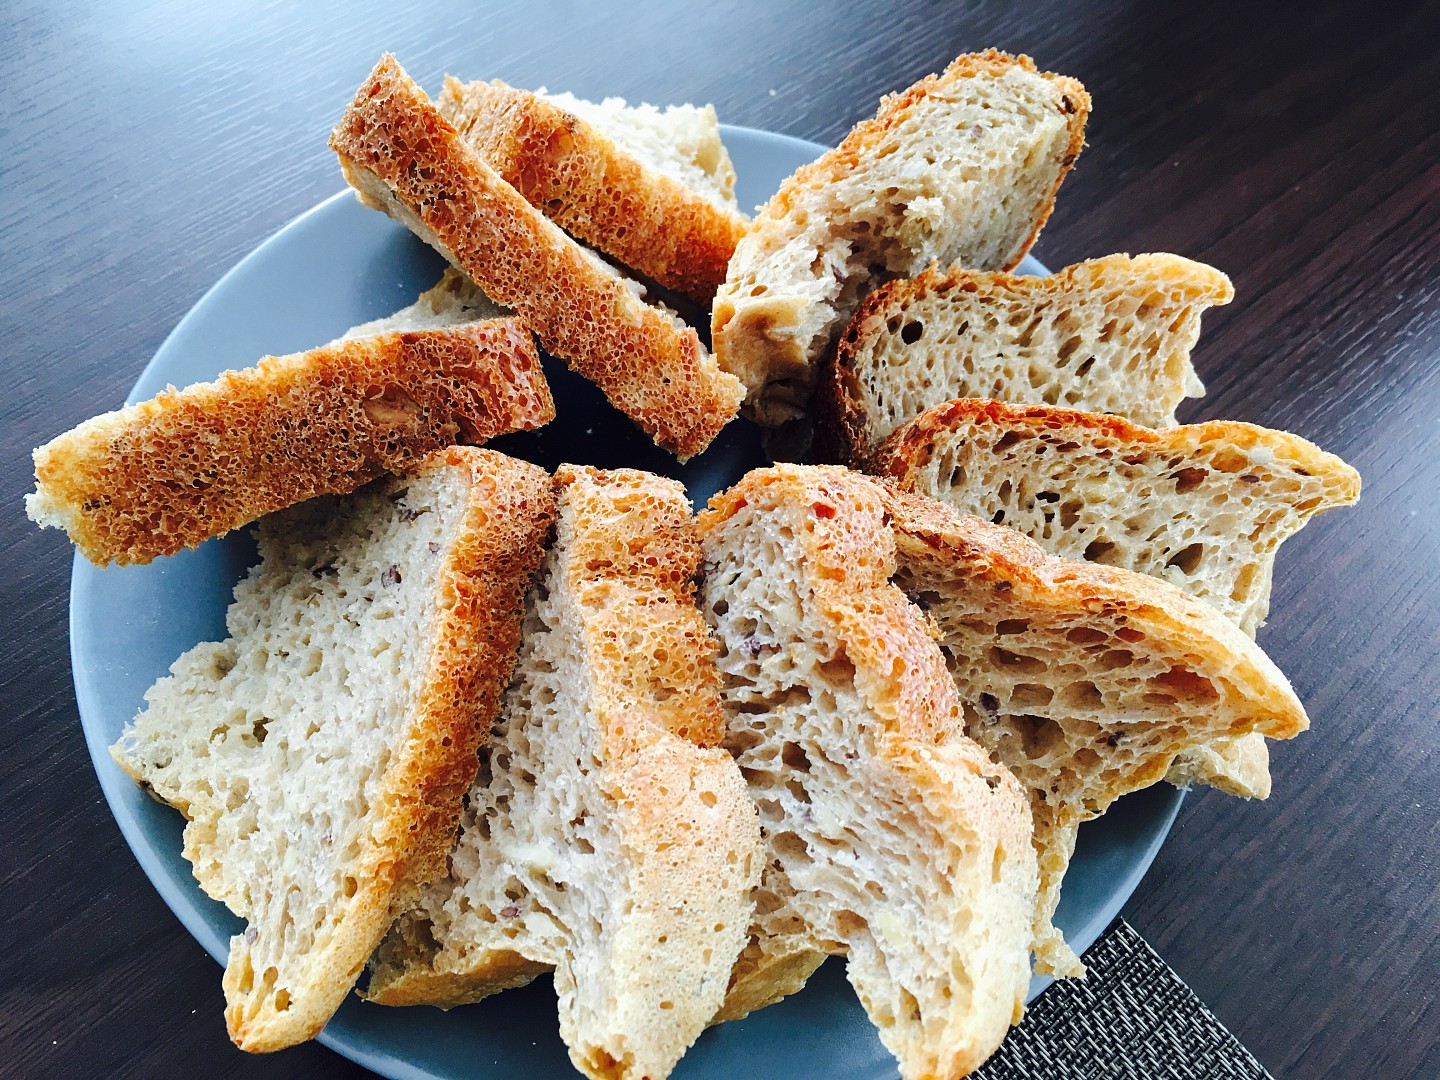 Žitný chléb z domácí pekárny